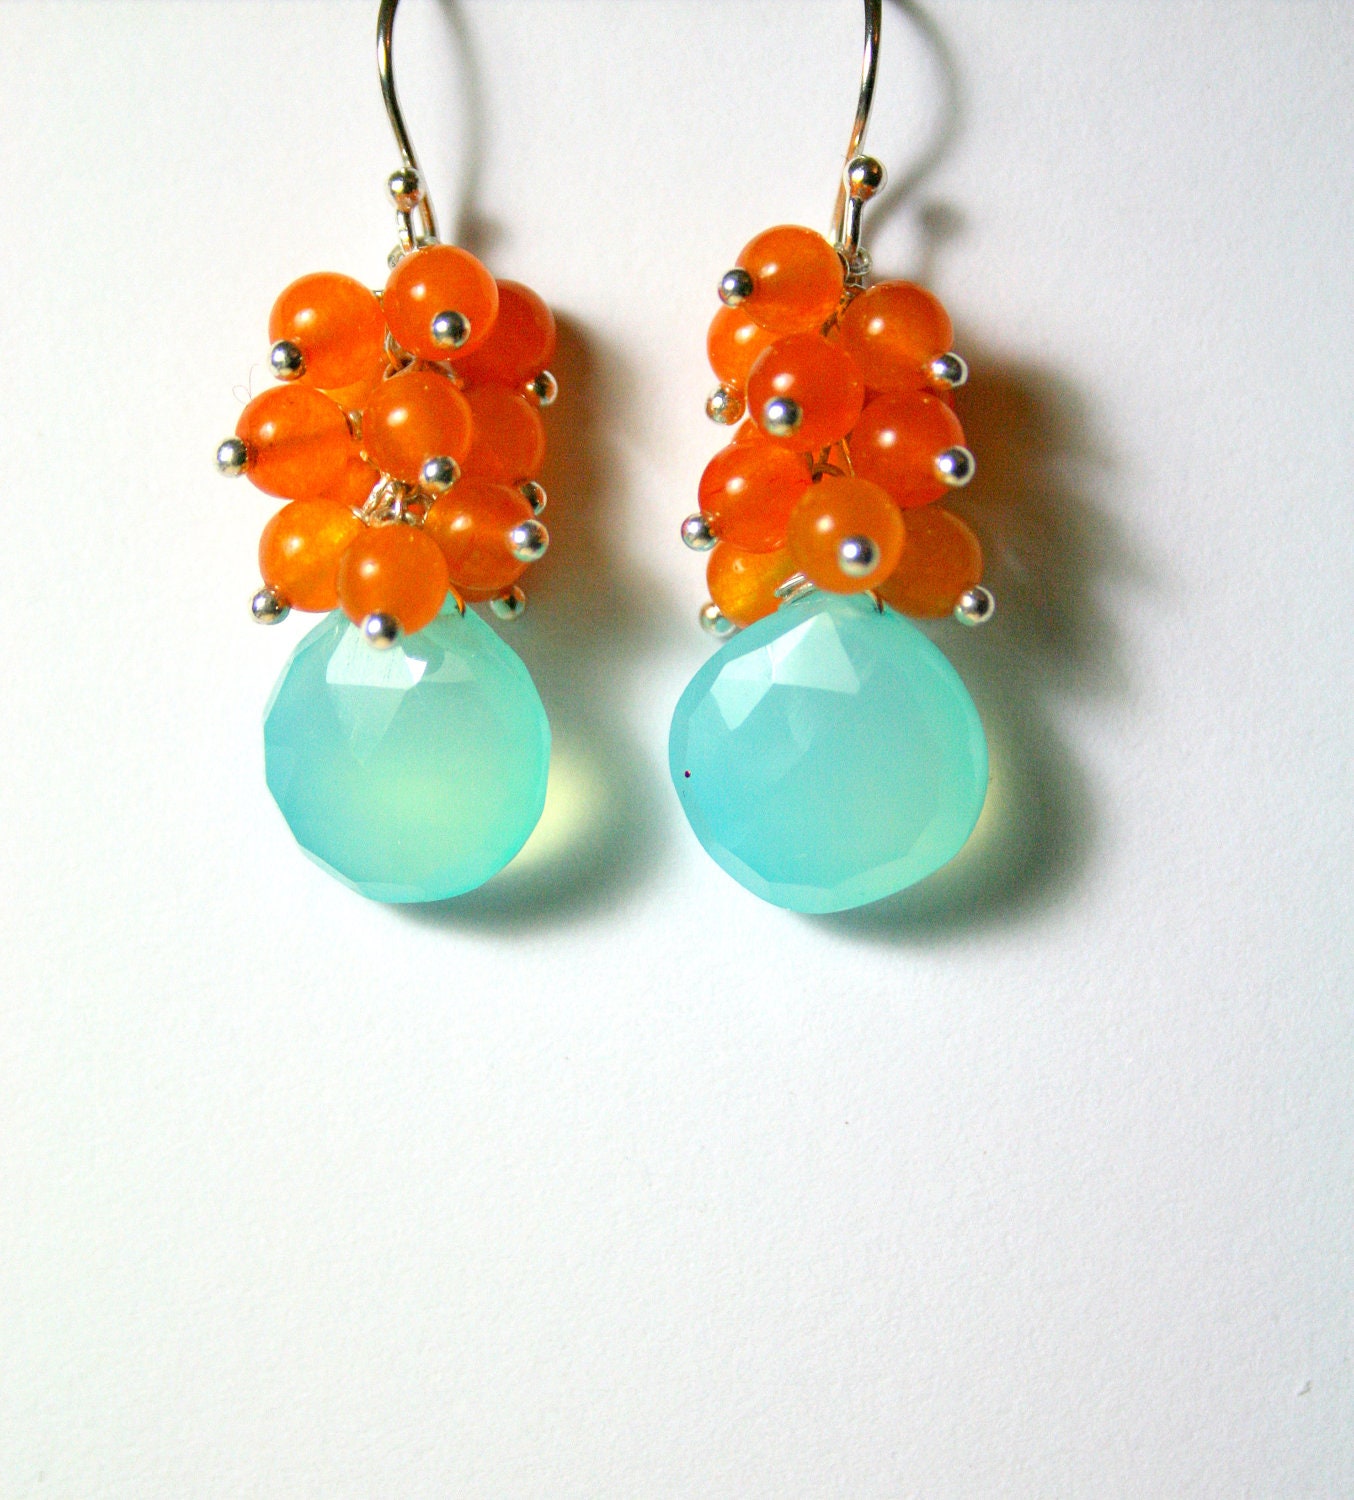 Aqua Gemstone Earrings, Orange Clusters, Sterling Silver